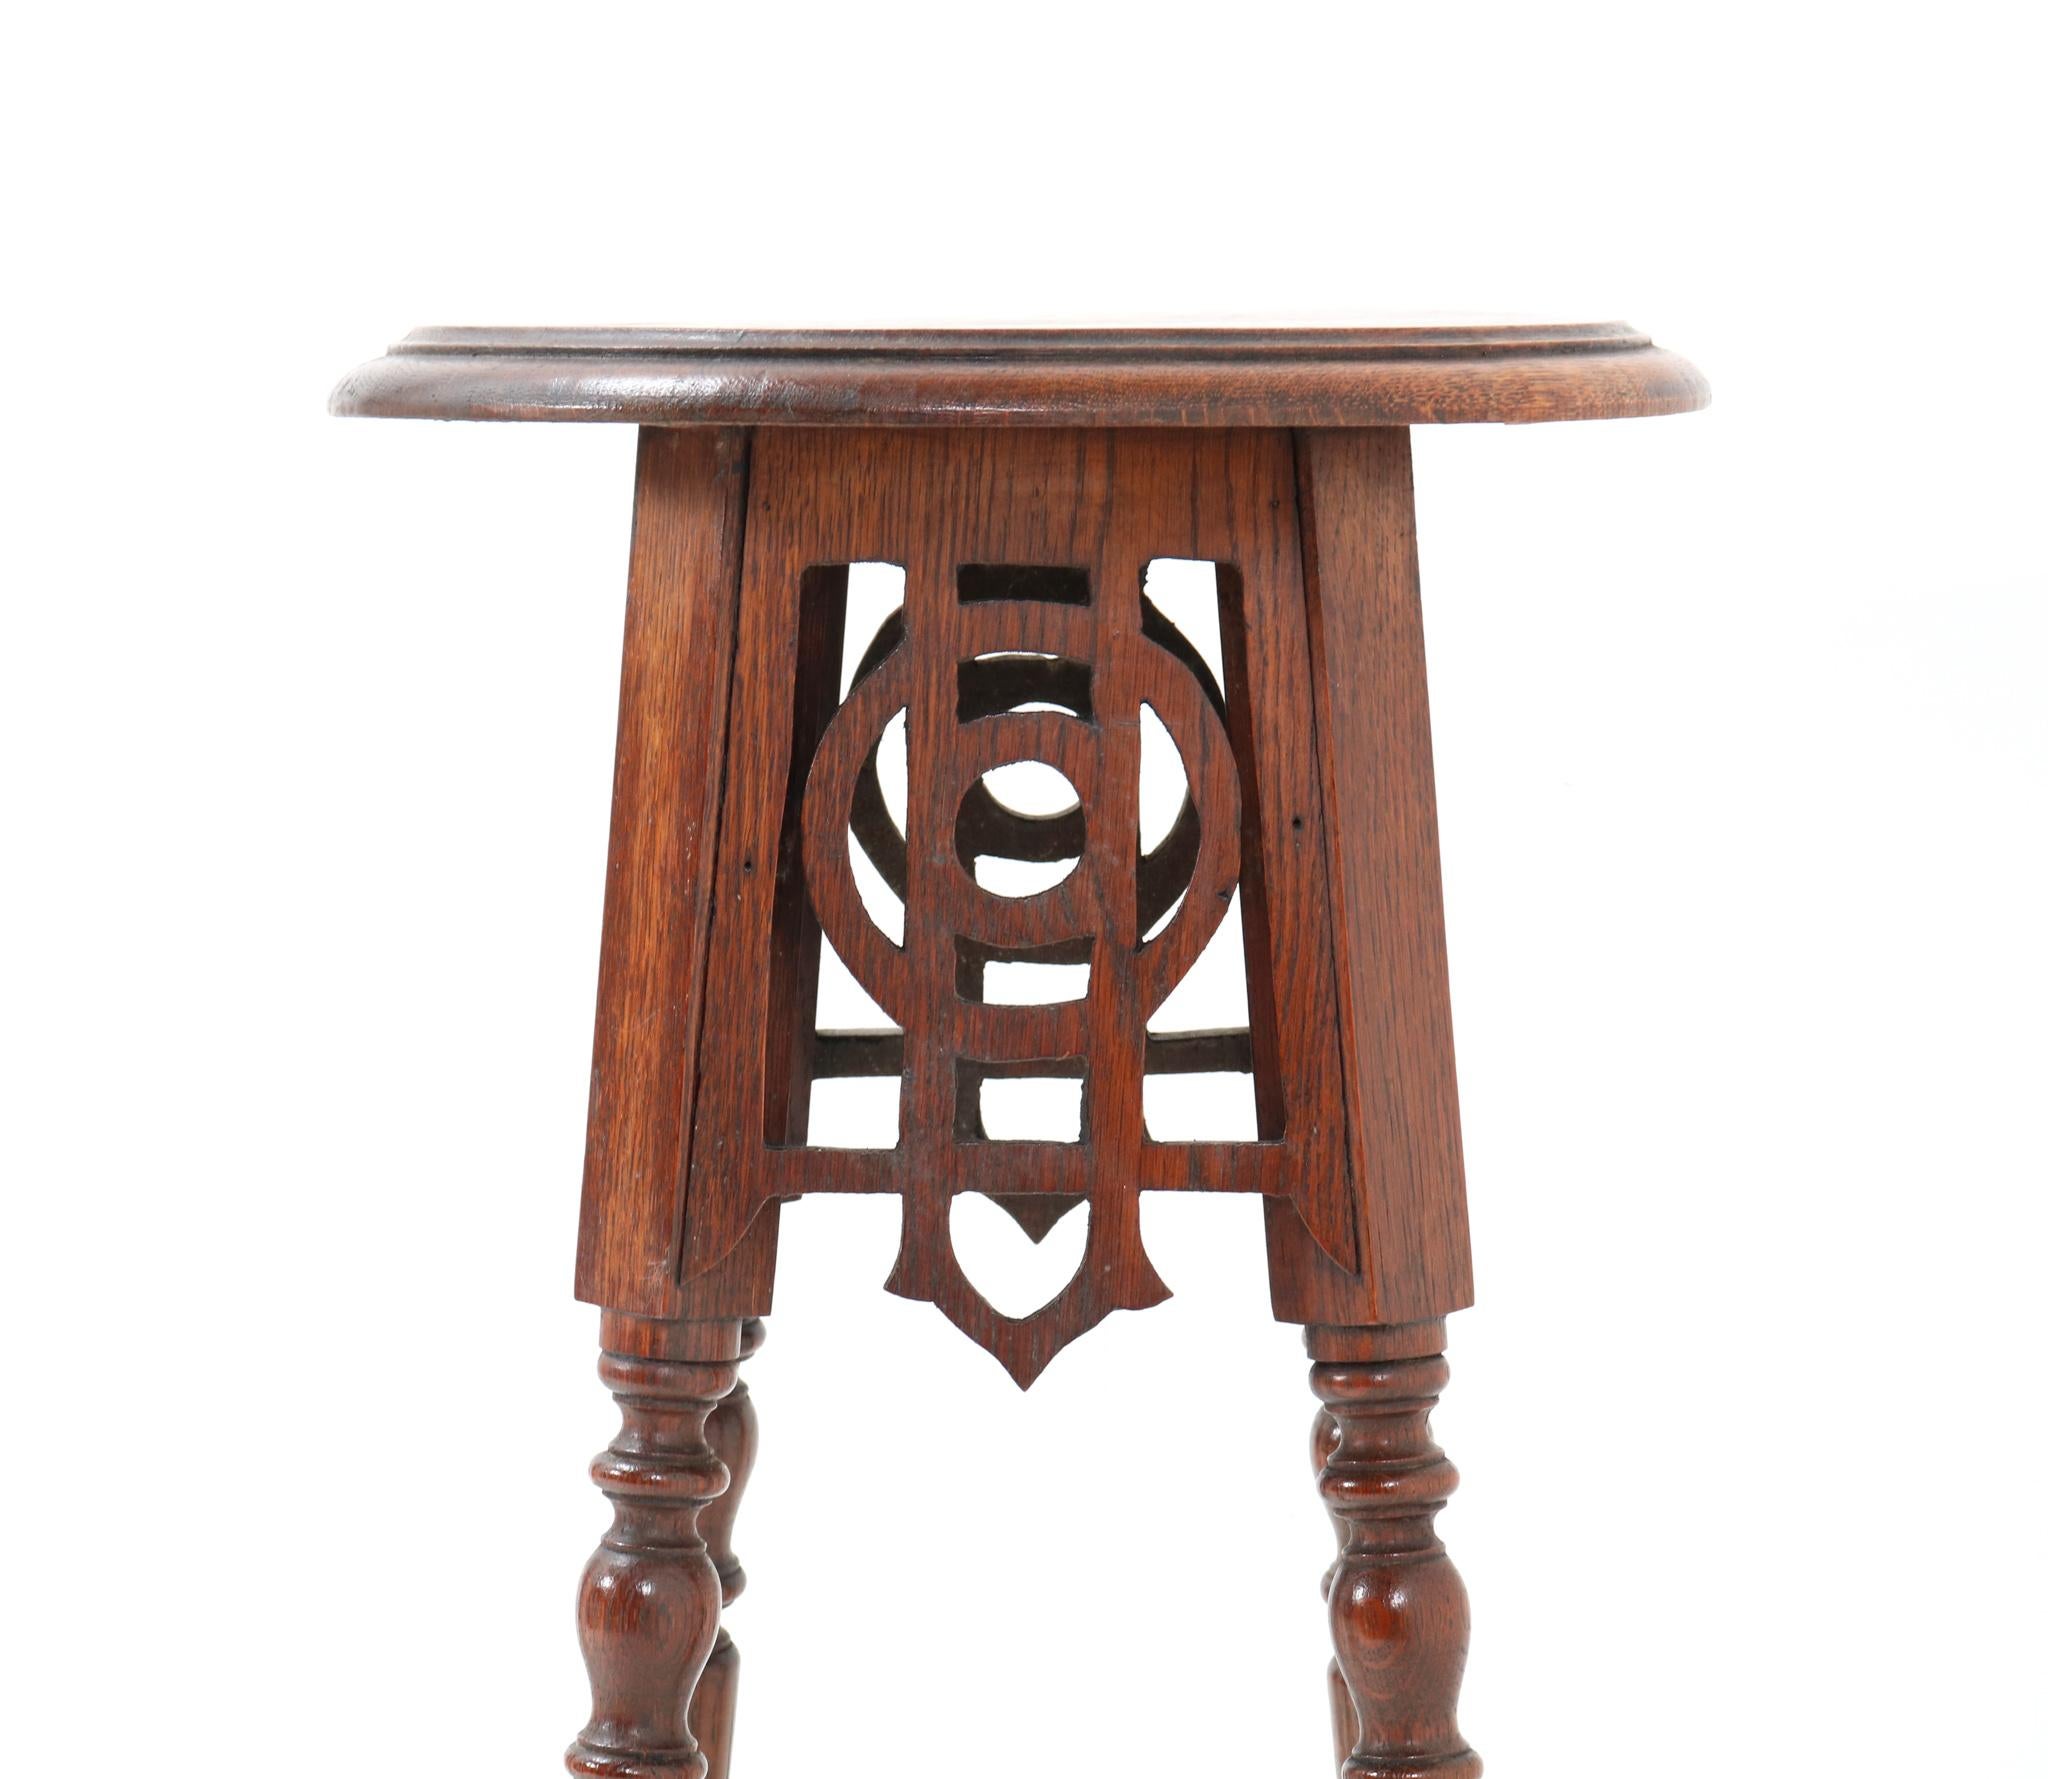 Oak Art Nouveau Pedestal Table or Plant Stand, 1900s For Sale 1